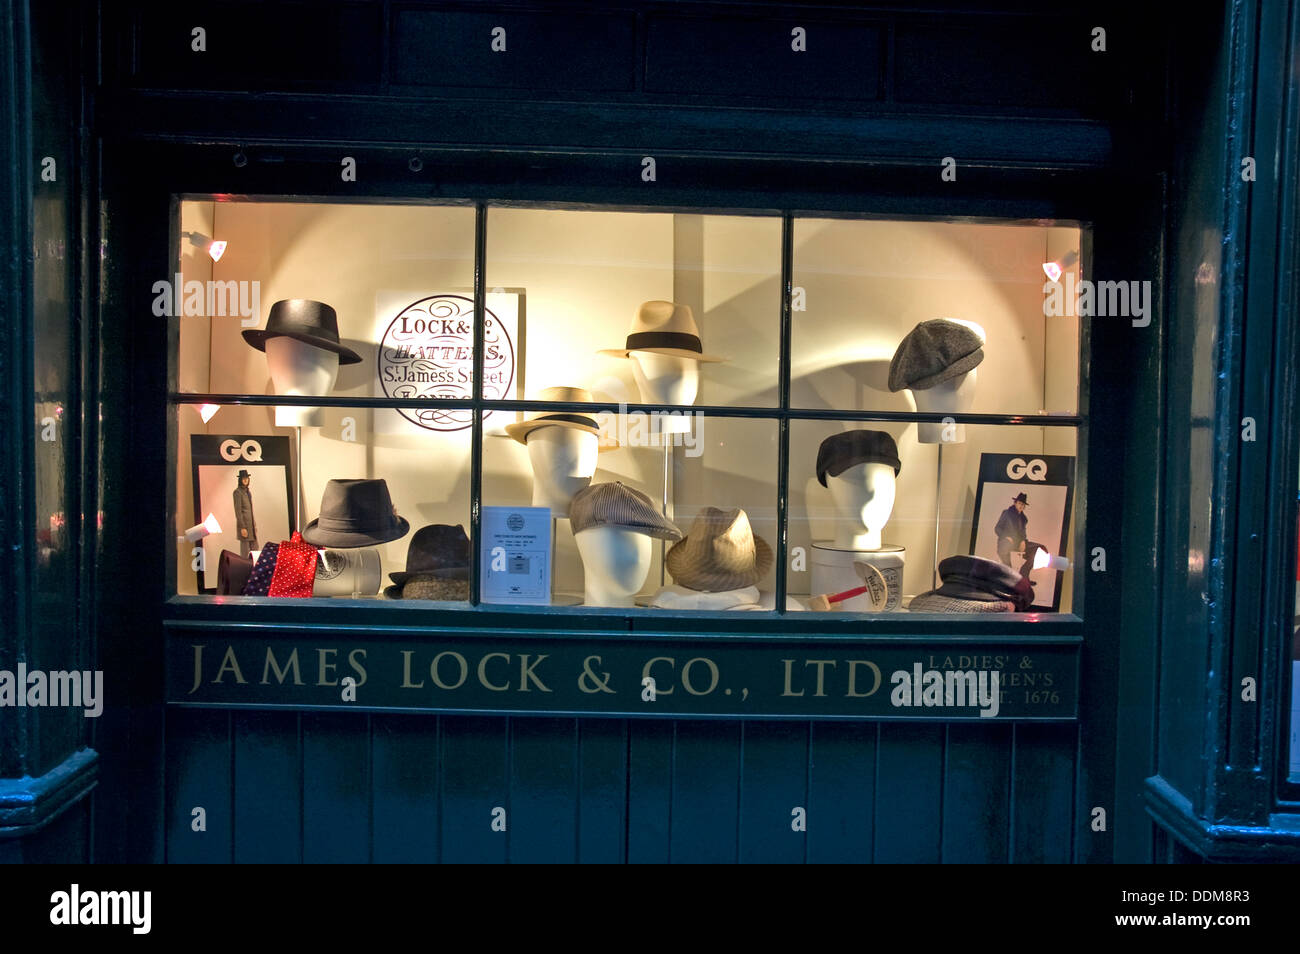 Locks célèbre hat shop St James London UK Banque D'Images